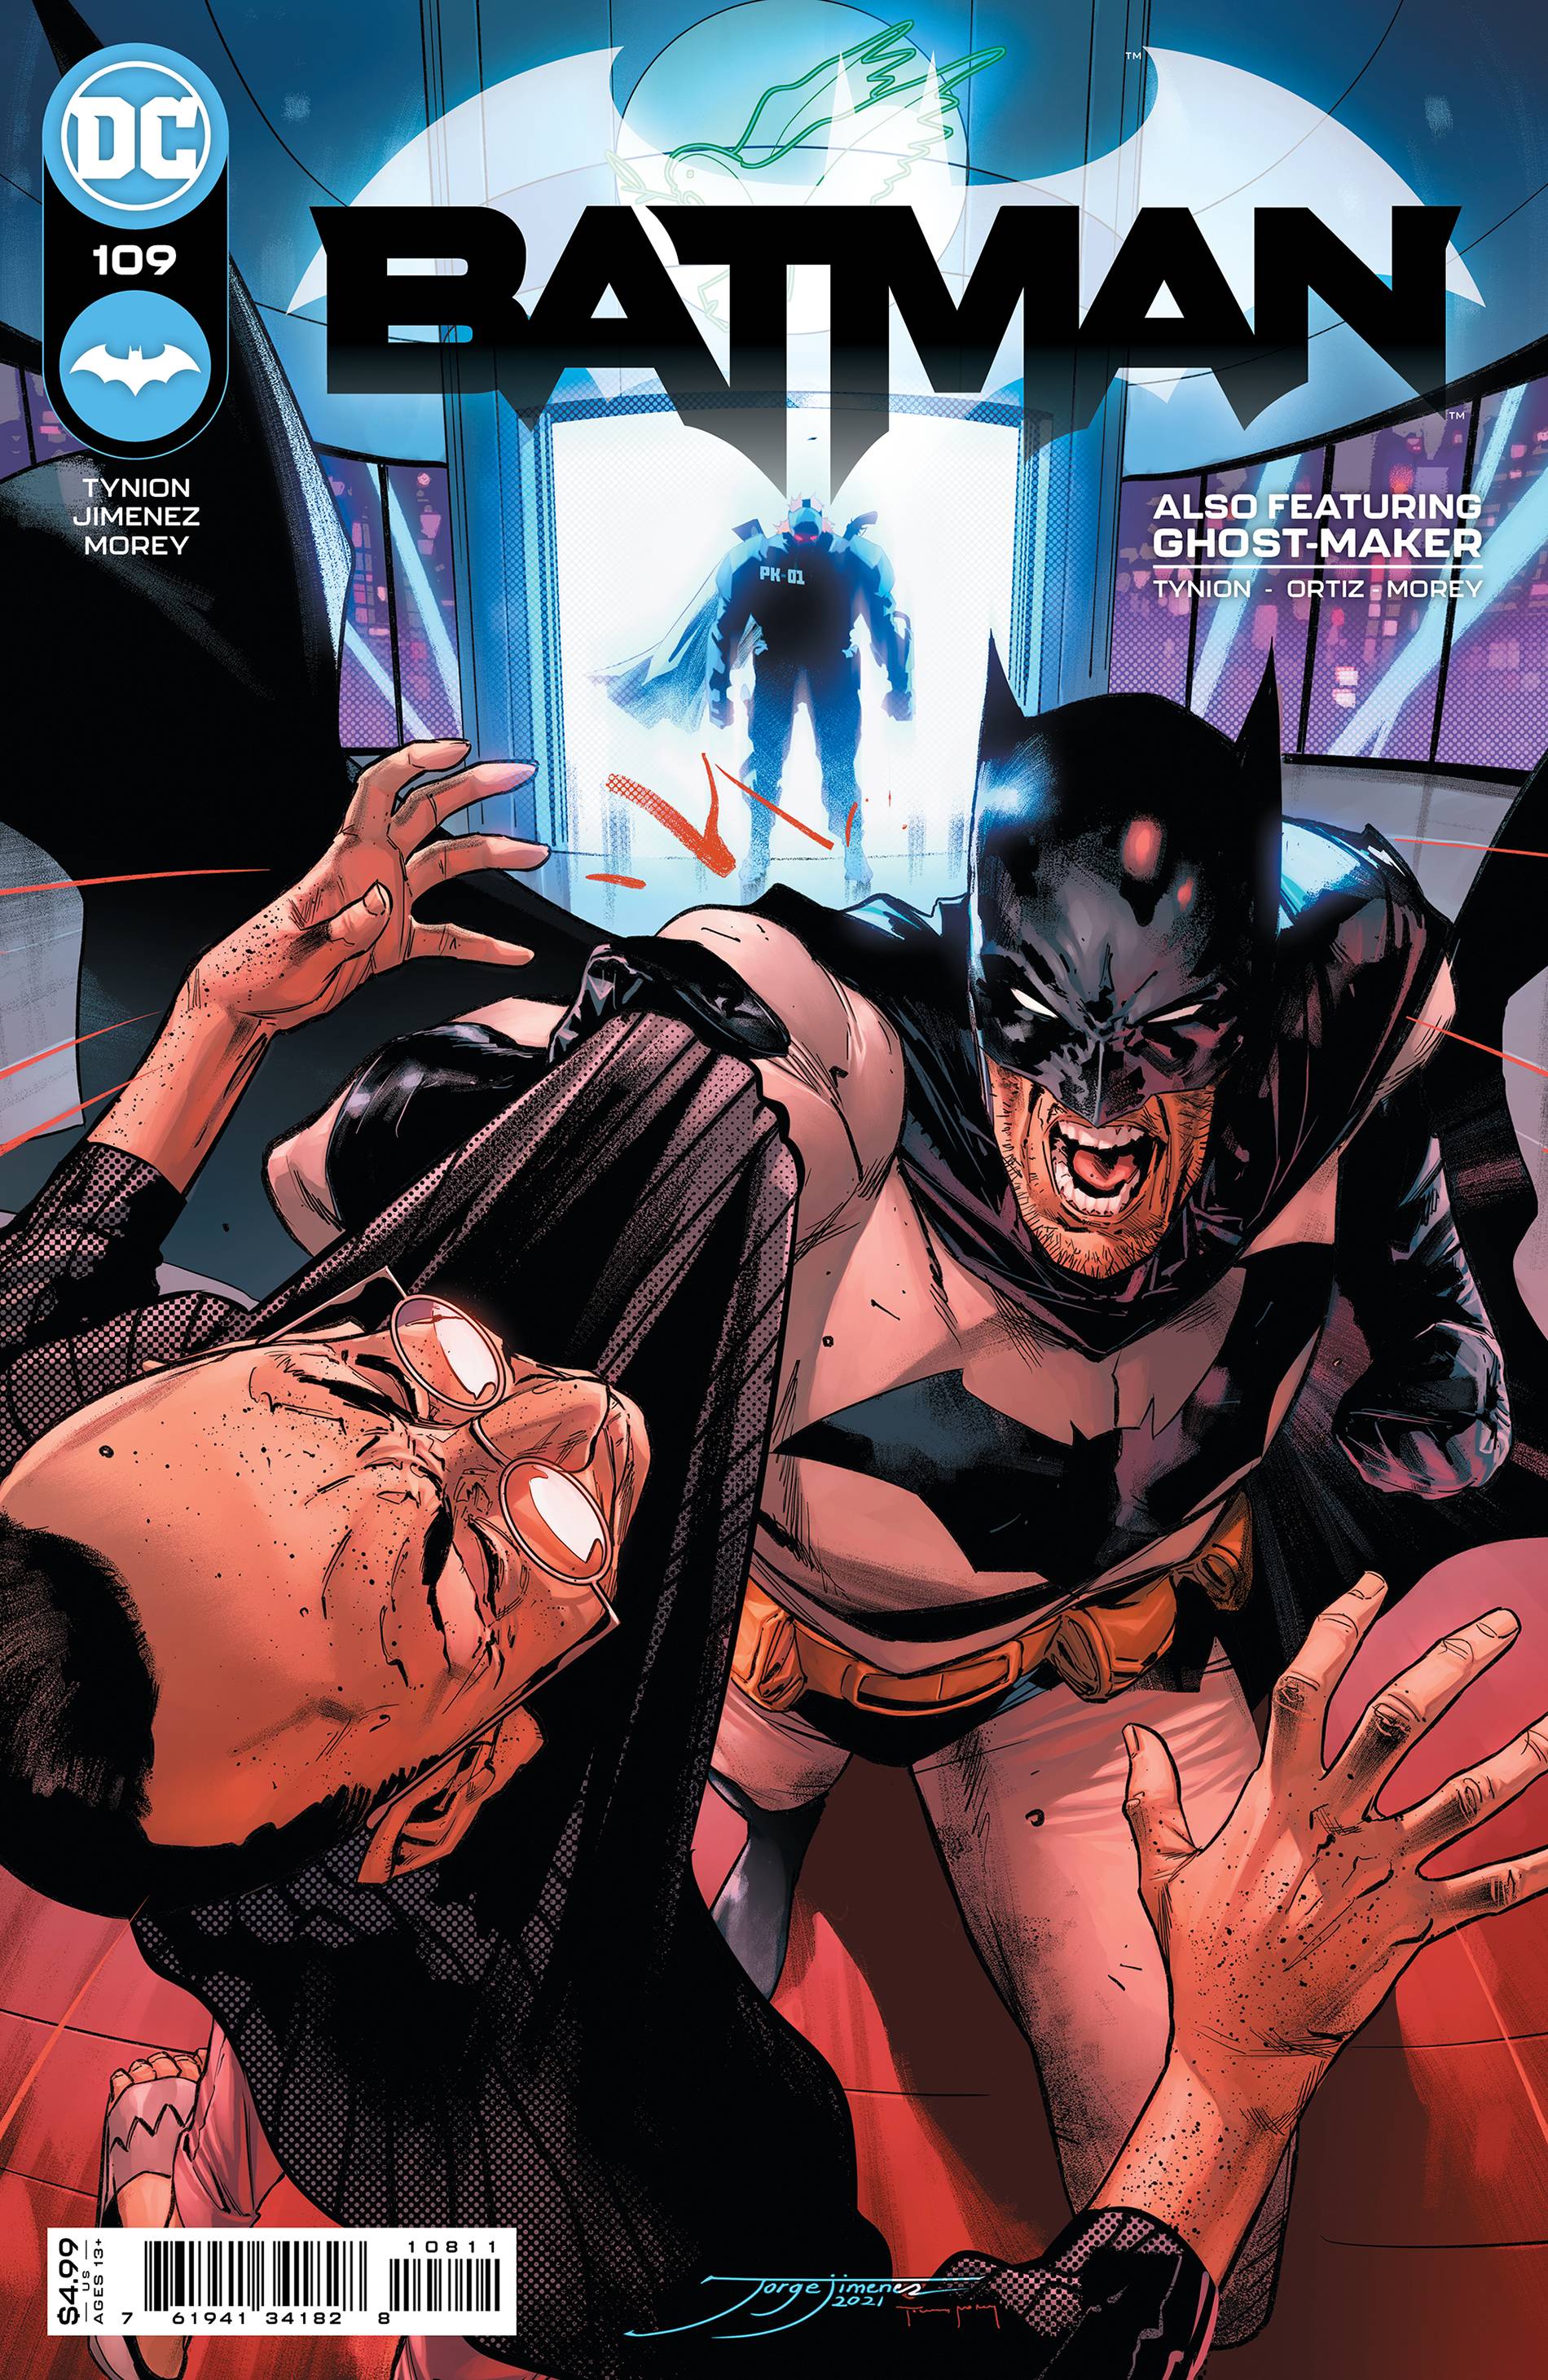 BATMAN #109 CVR A JIMENEZ (MR) | L.A. Mood Comics and Games